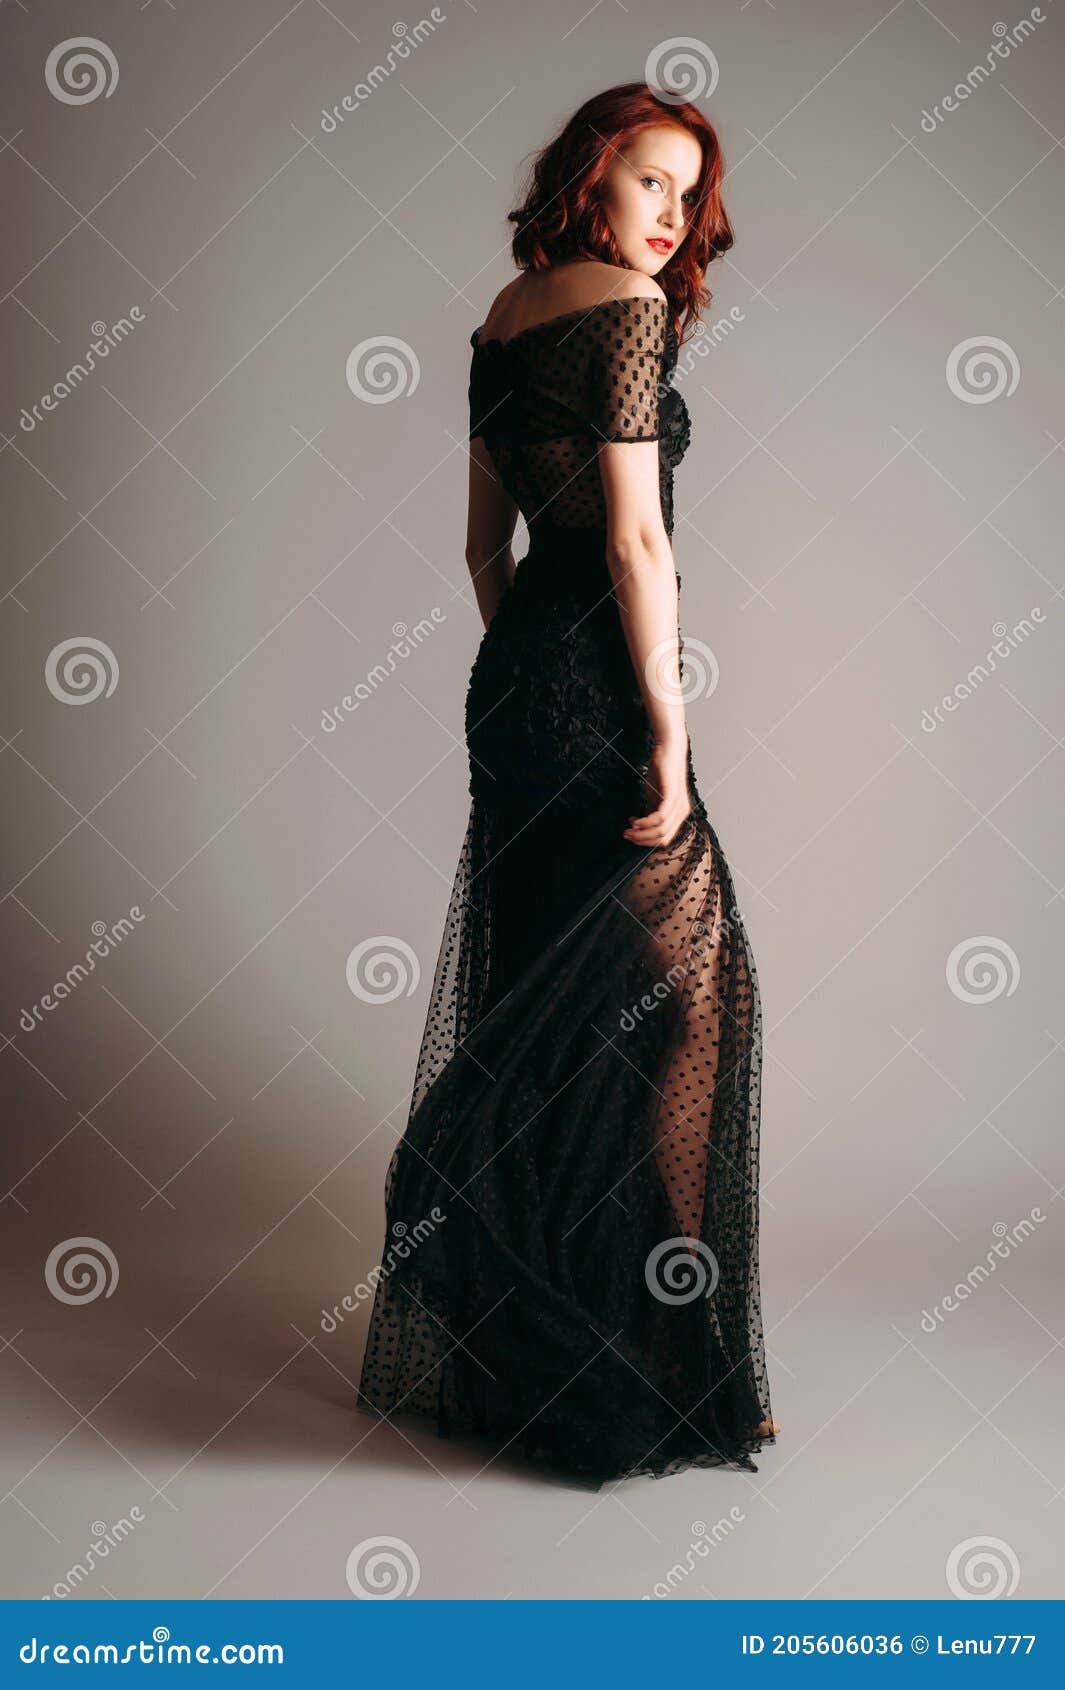 Vestido Negro Transparente De Noche Hermosa Modelo De Flexión Delgada Moderna Apariencia Femenina Para Una Fiesta. Foto de archivo - Imagen de hembra, envoltura: 205606036